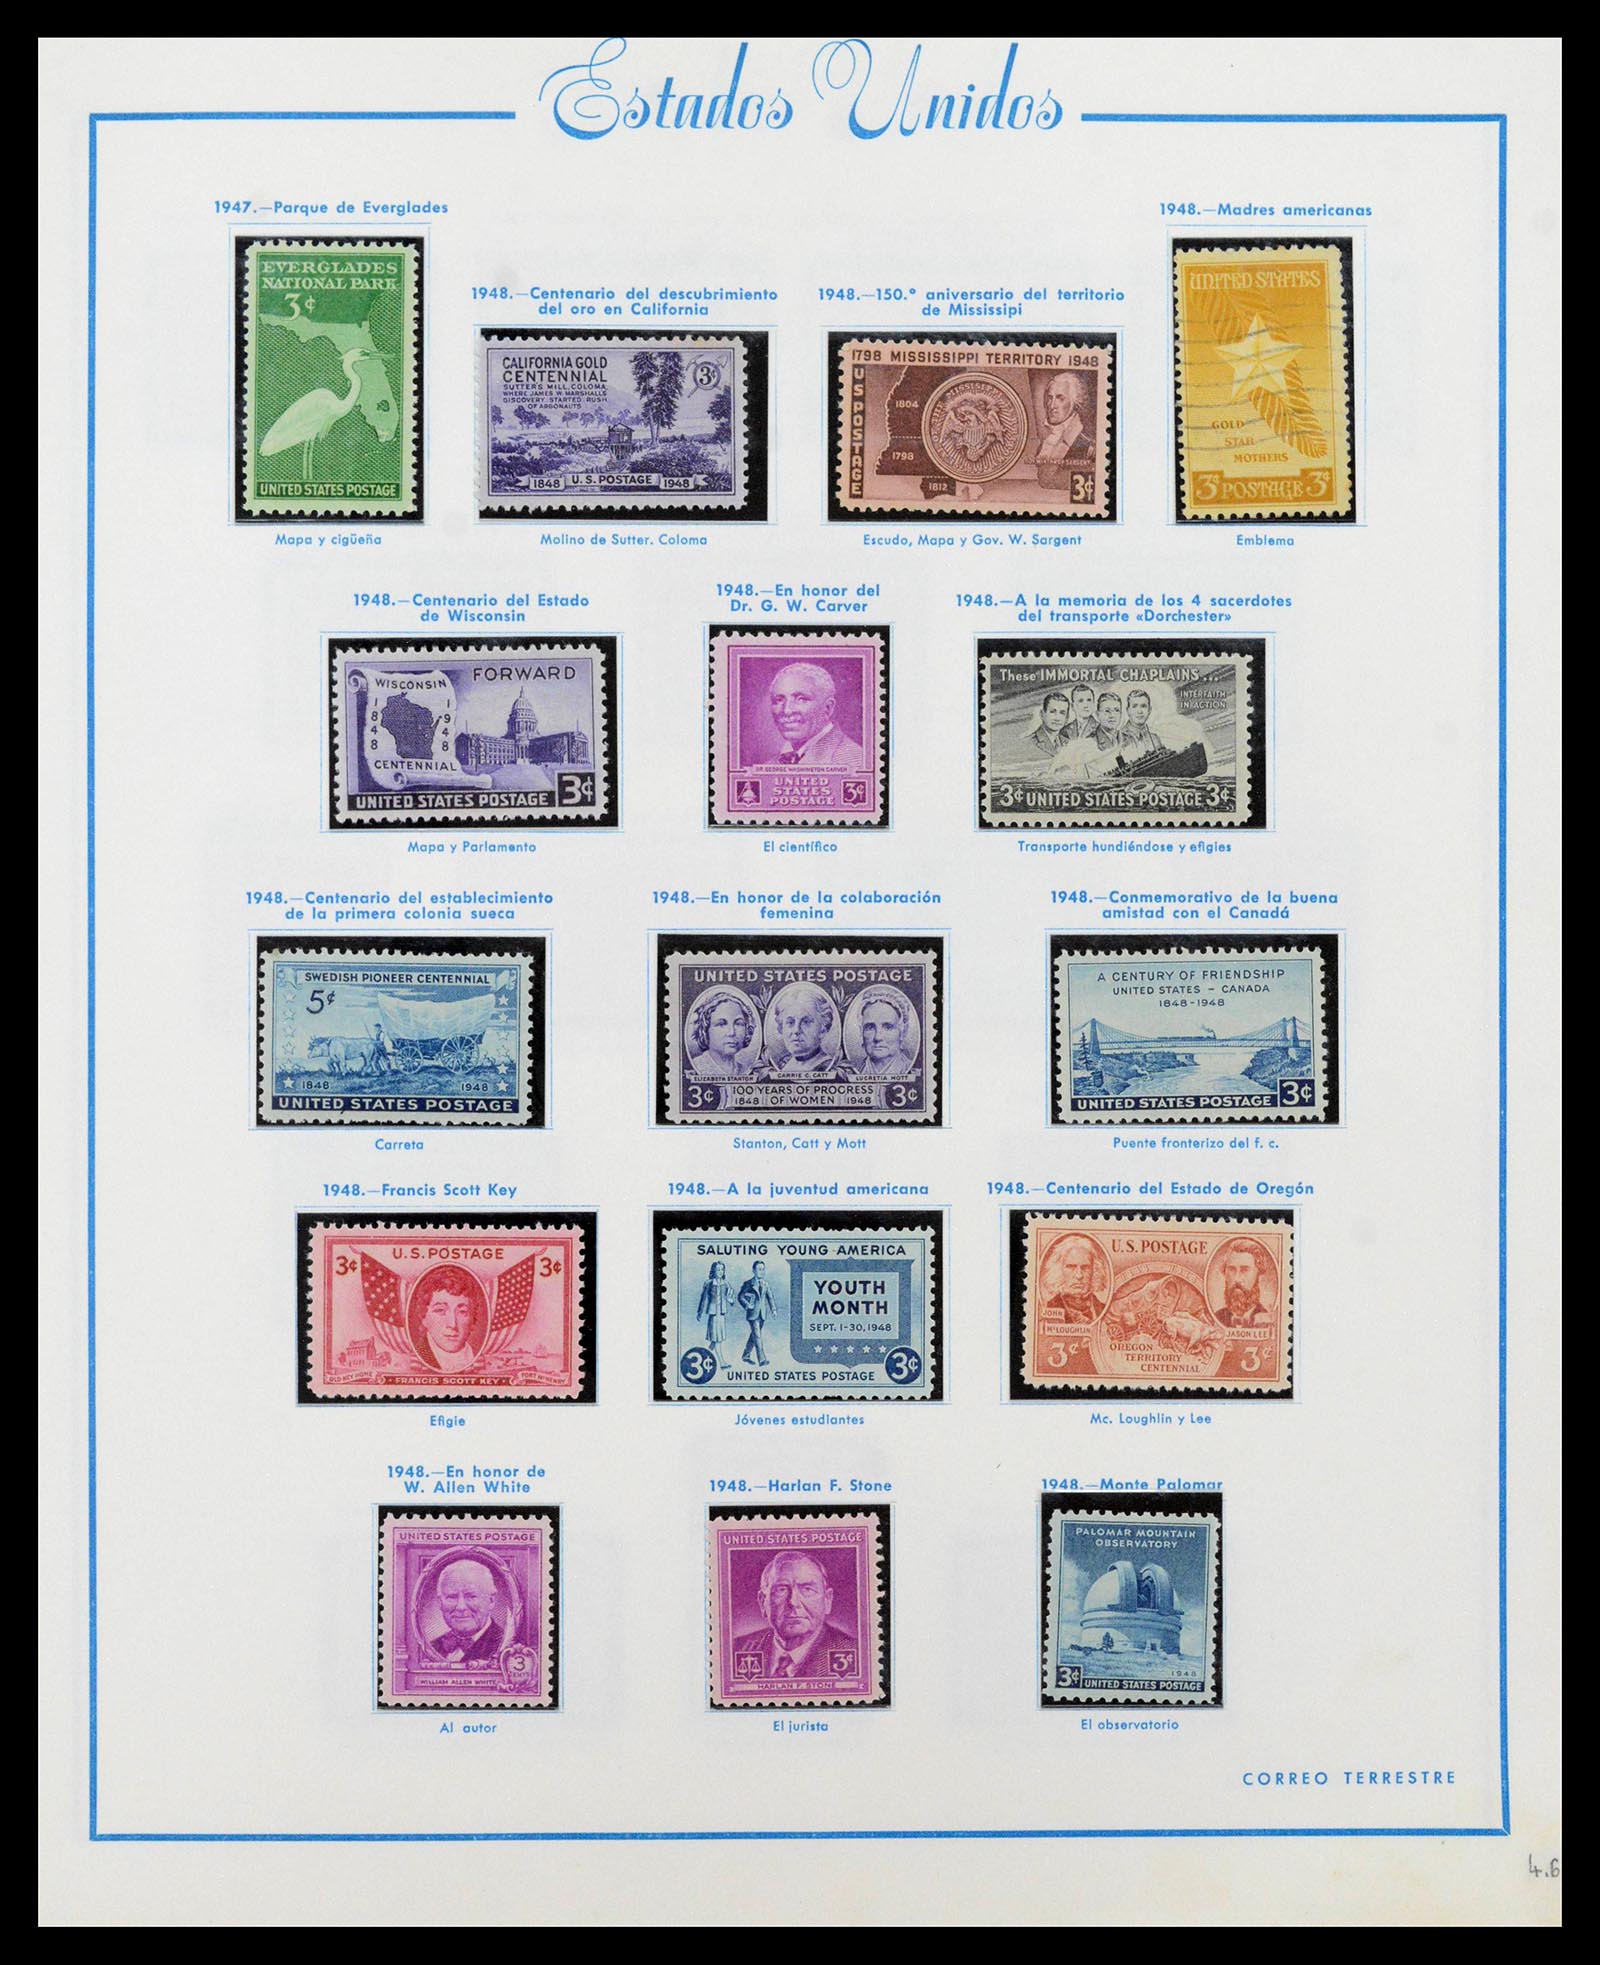 39190 0027 - Stamp collection 39190 USA 1851-1975.